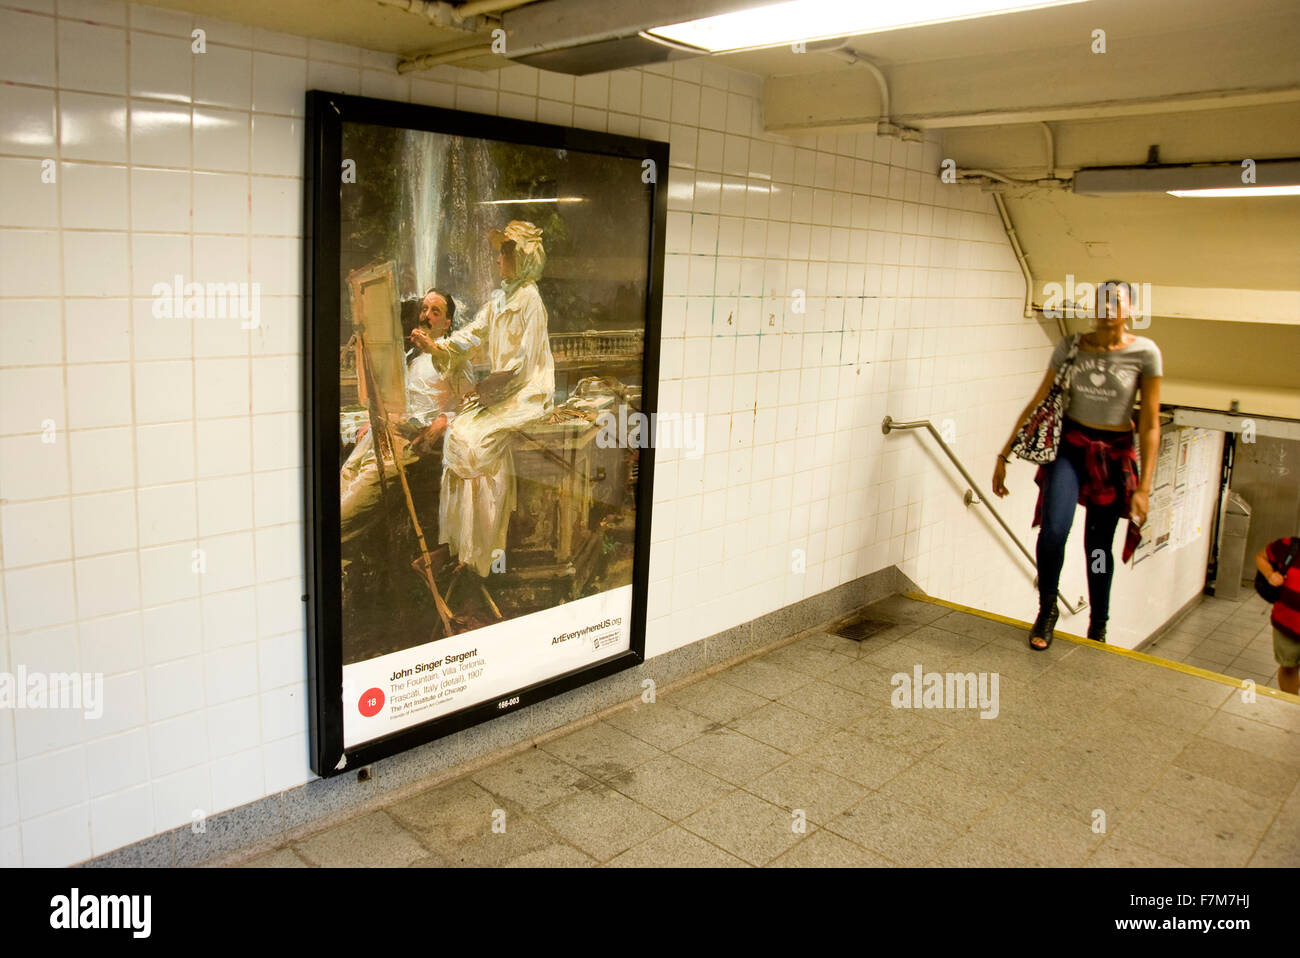 John Singer Sargent peinture reproduite sur panneau publicitaire dans une station de métro dans le cadre de l'événement partout l'Art à New York Banque D'Images